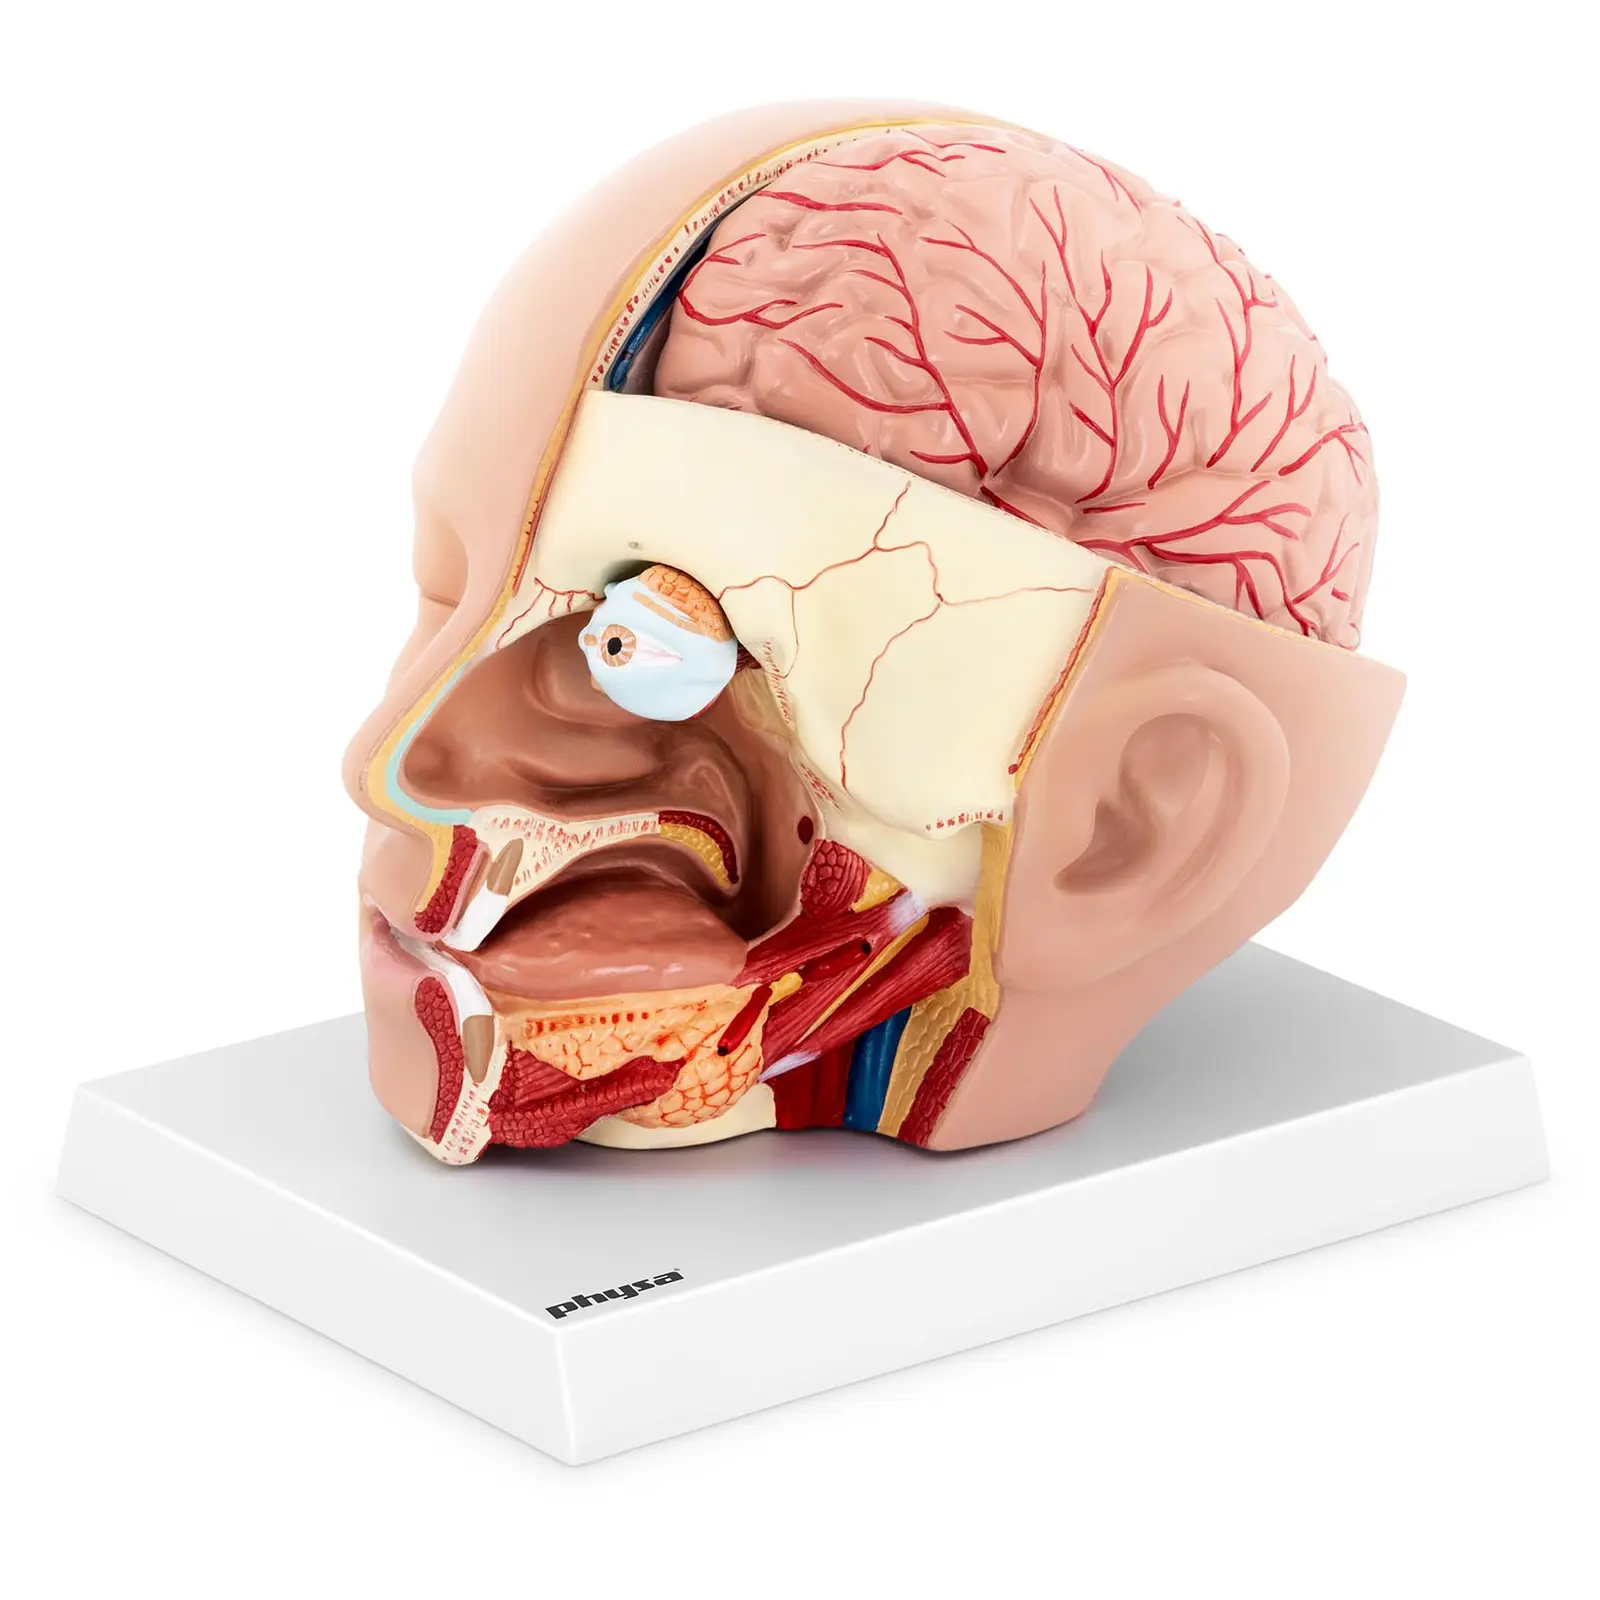 Modelo anatómico de cabeza - desmontable en 4 piezas - tamaño natural